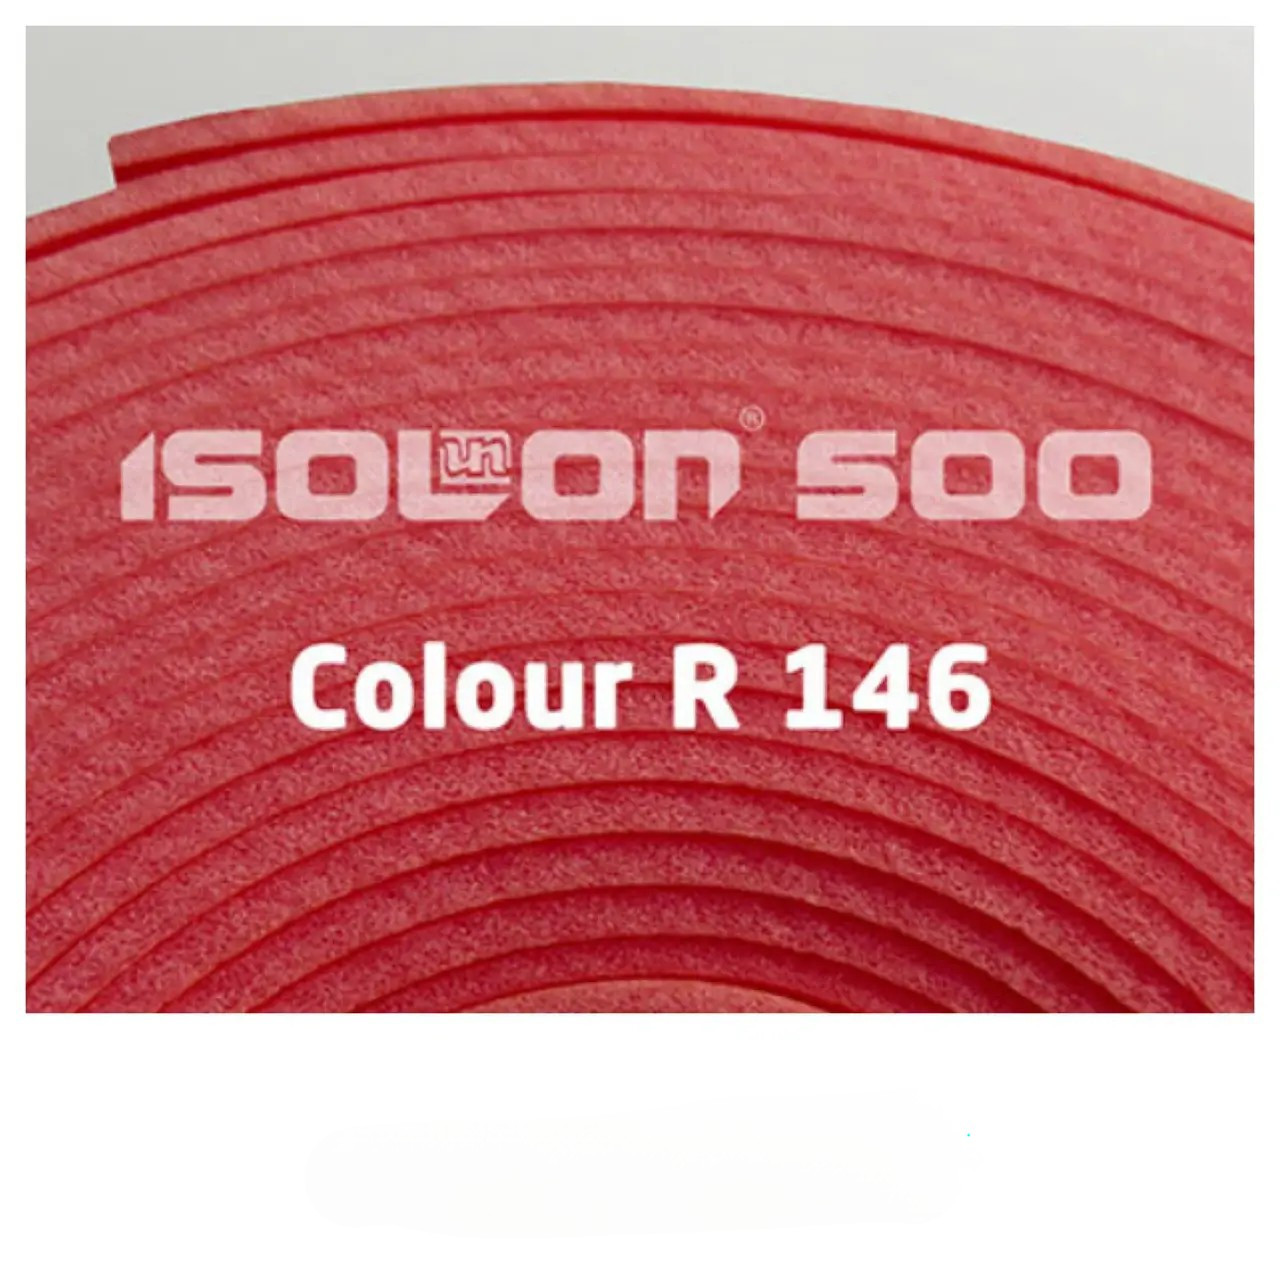 Ізолон 3002 Colour R146 0,75 черешня, фото 1